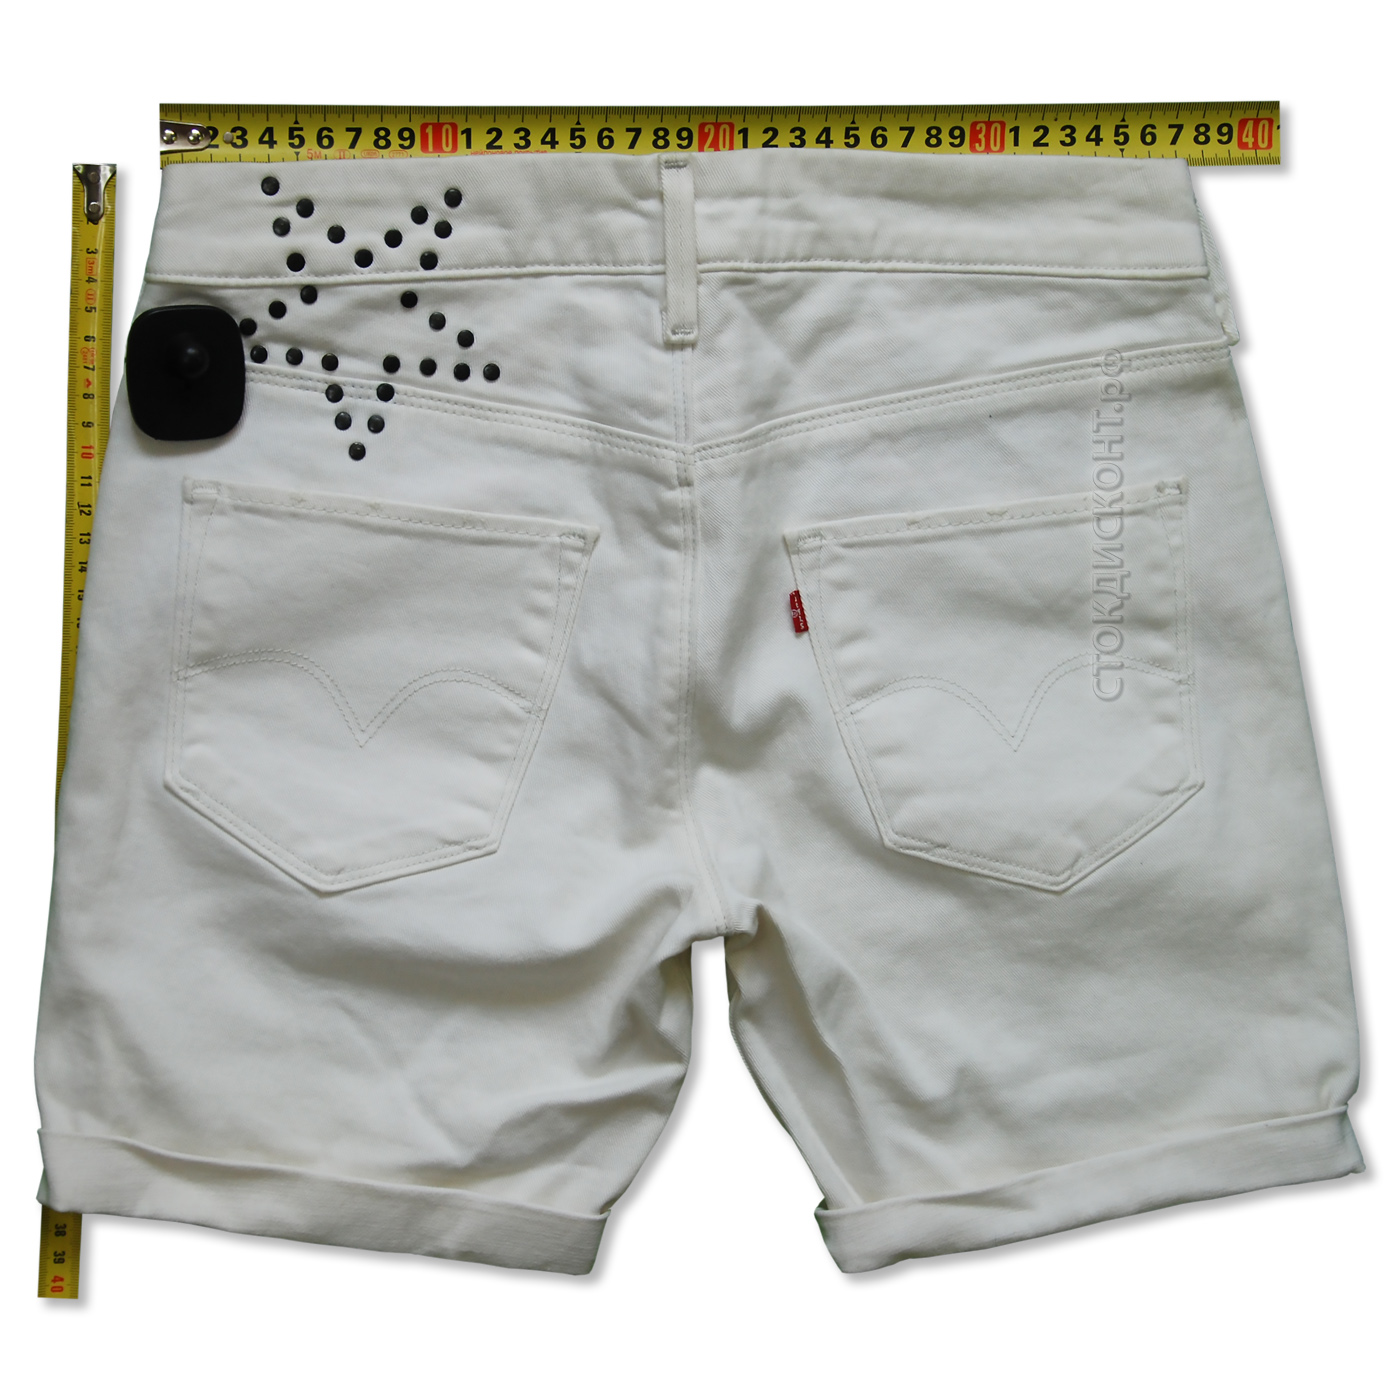 LEVIS Shorts White Leather Pocket